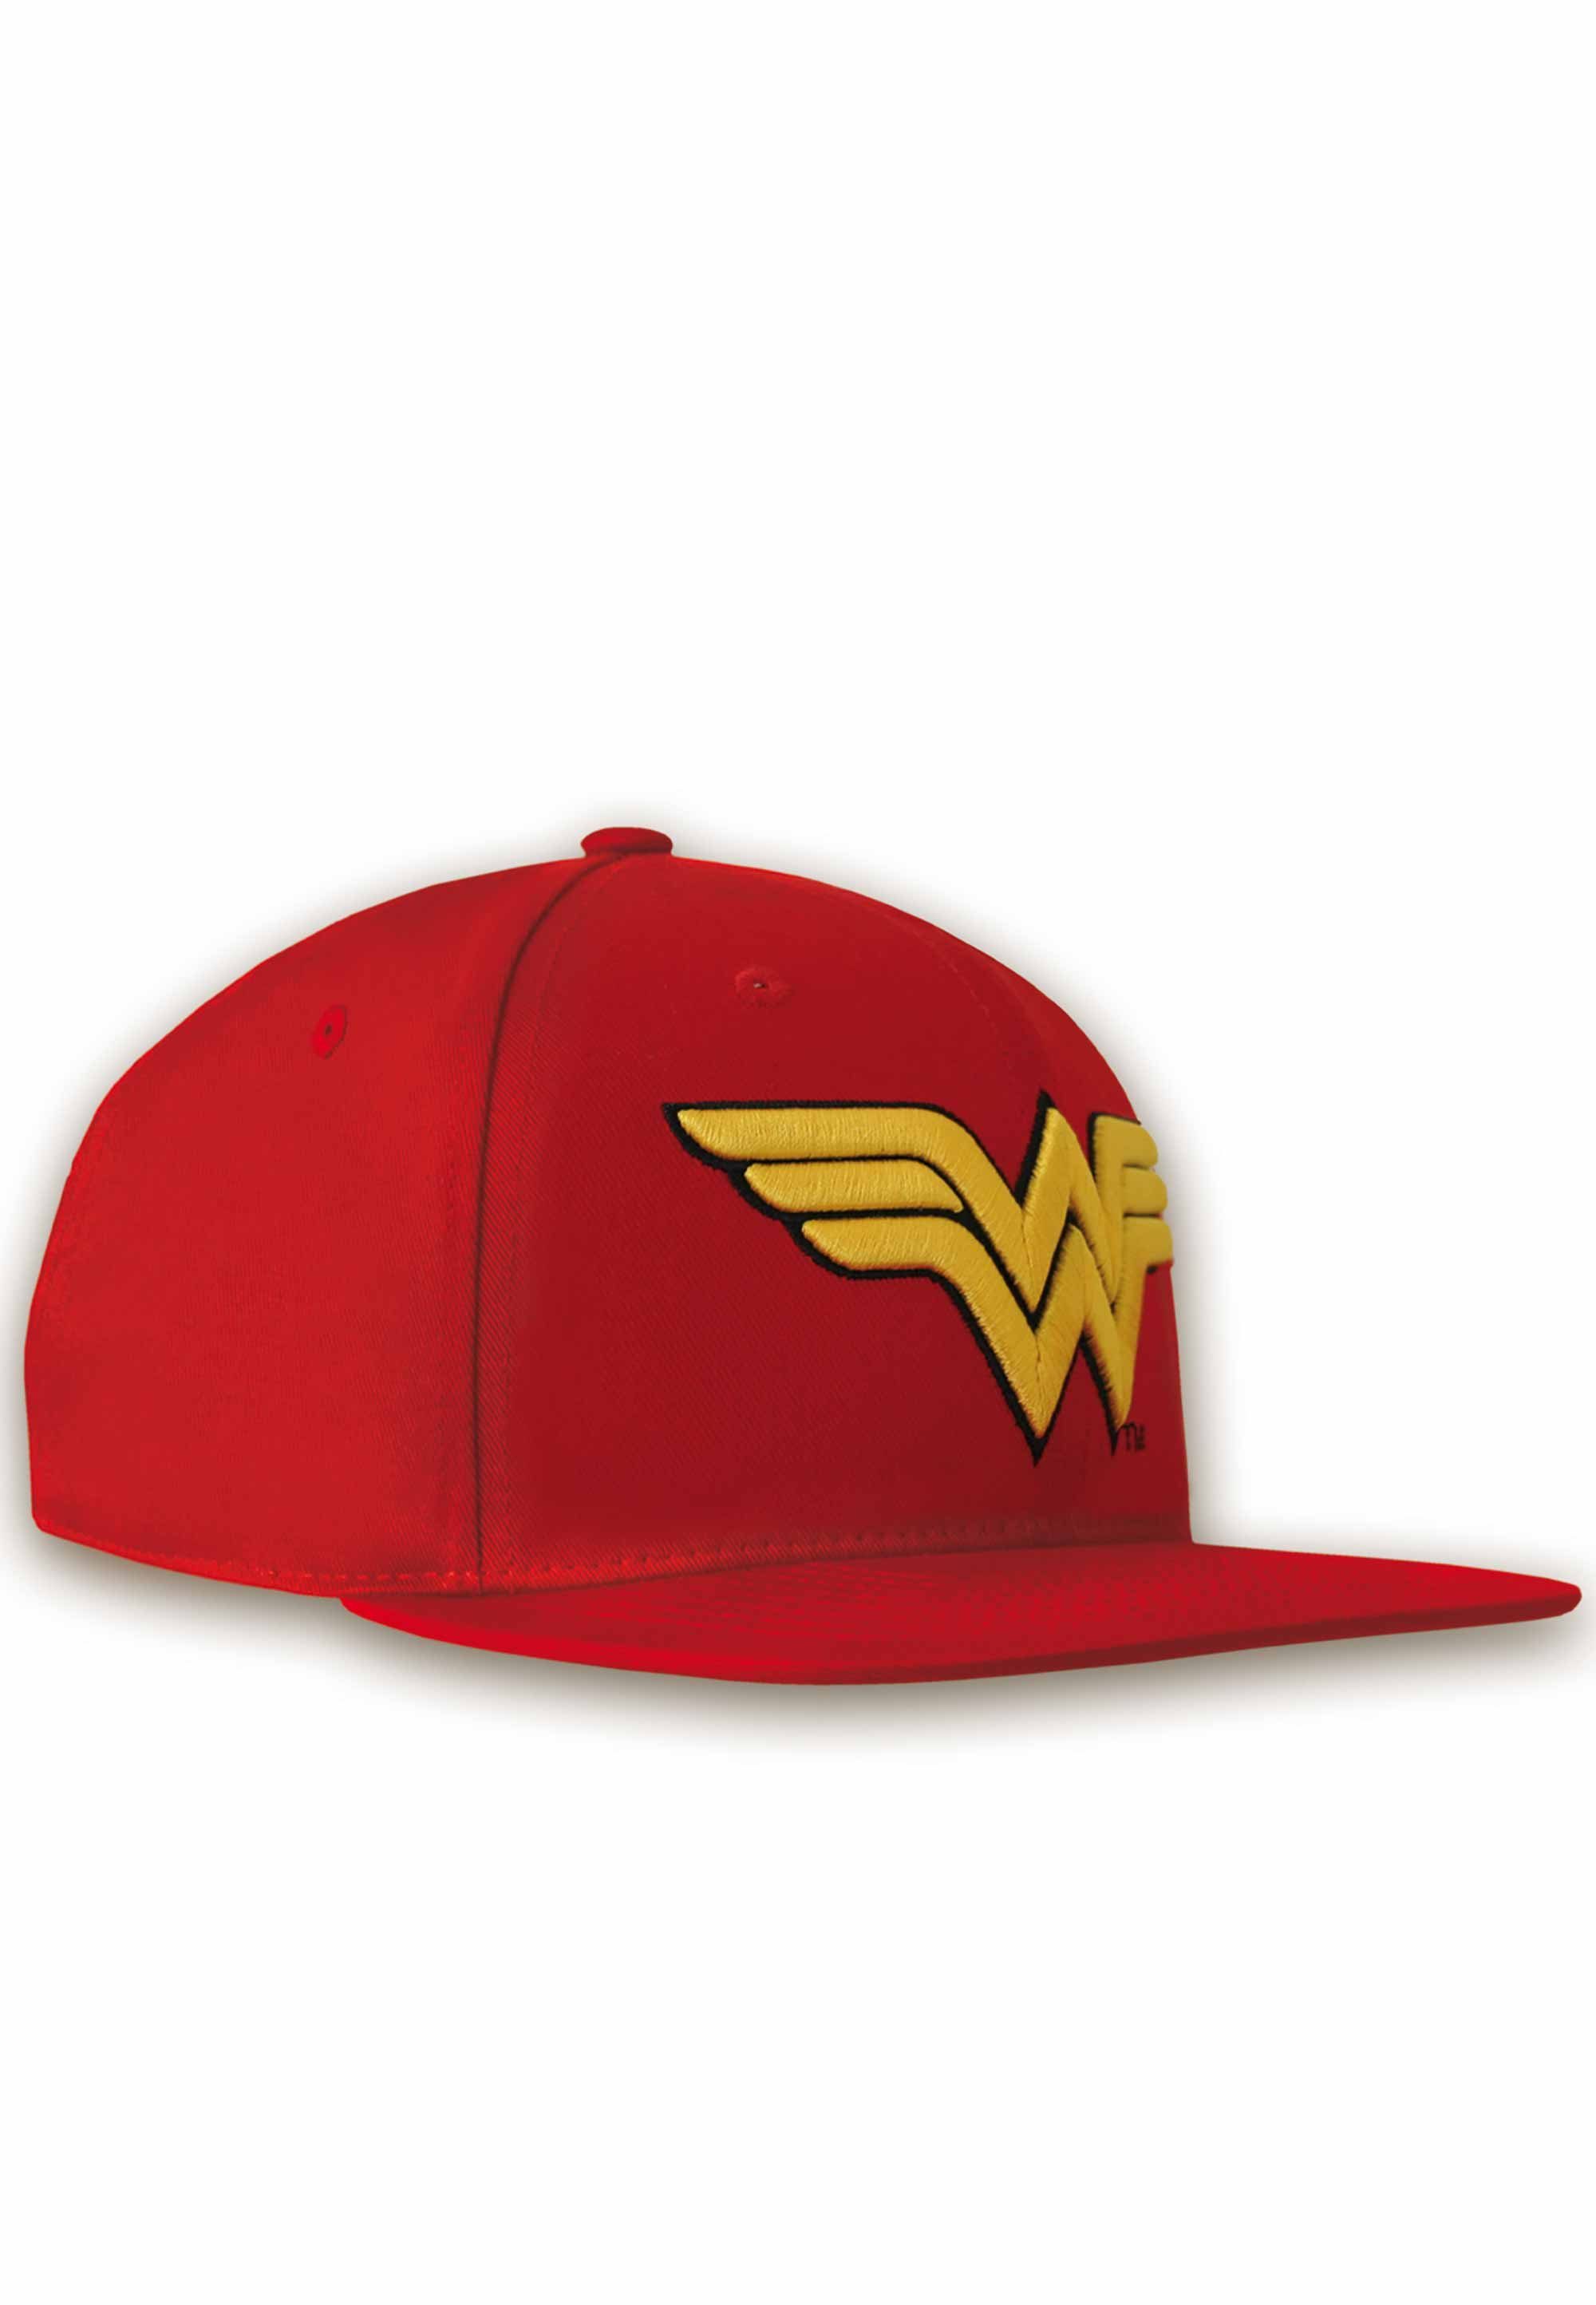 Woman Wonder DC mit lizenzierter Stickerei - Baseball LOGOSHIRT Cap